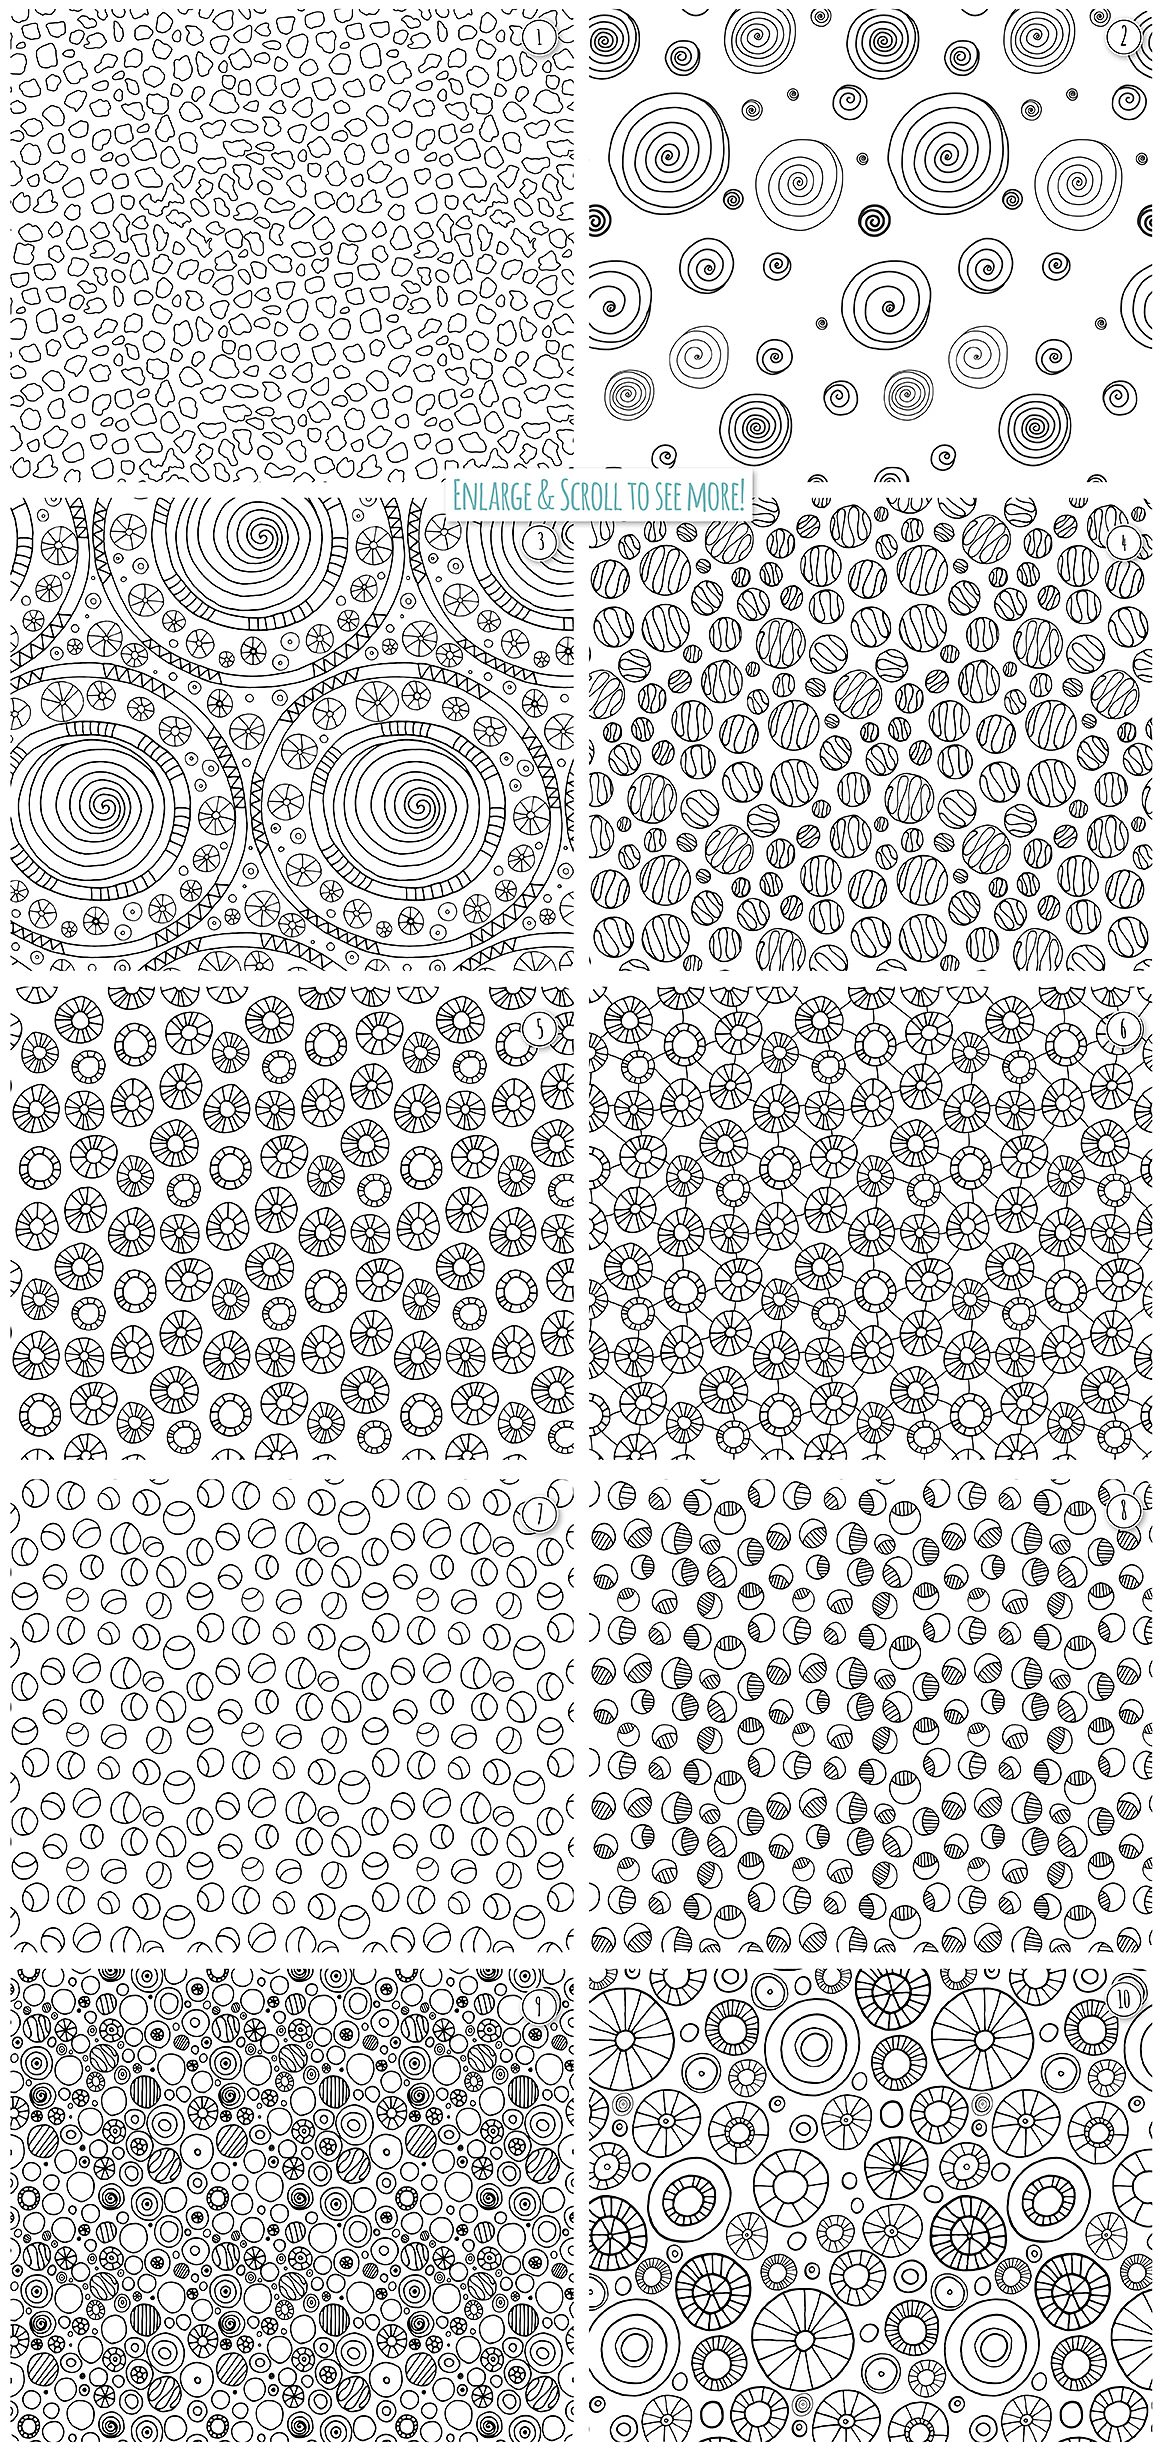 手绘图案无缝背景Circle Repeat Patterns